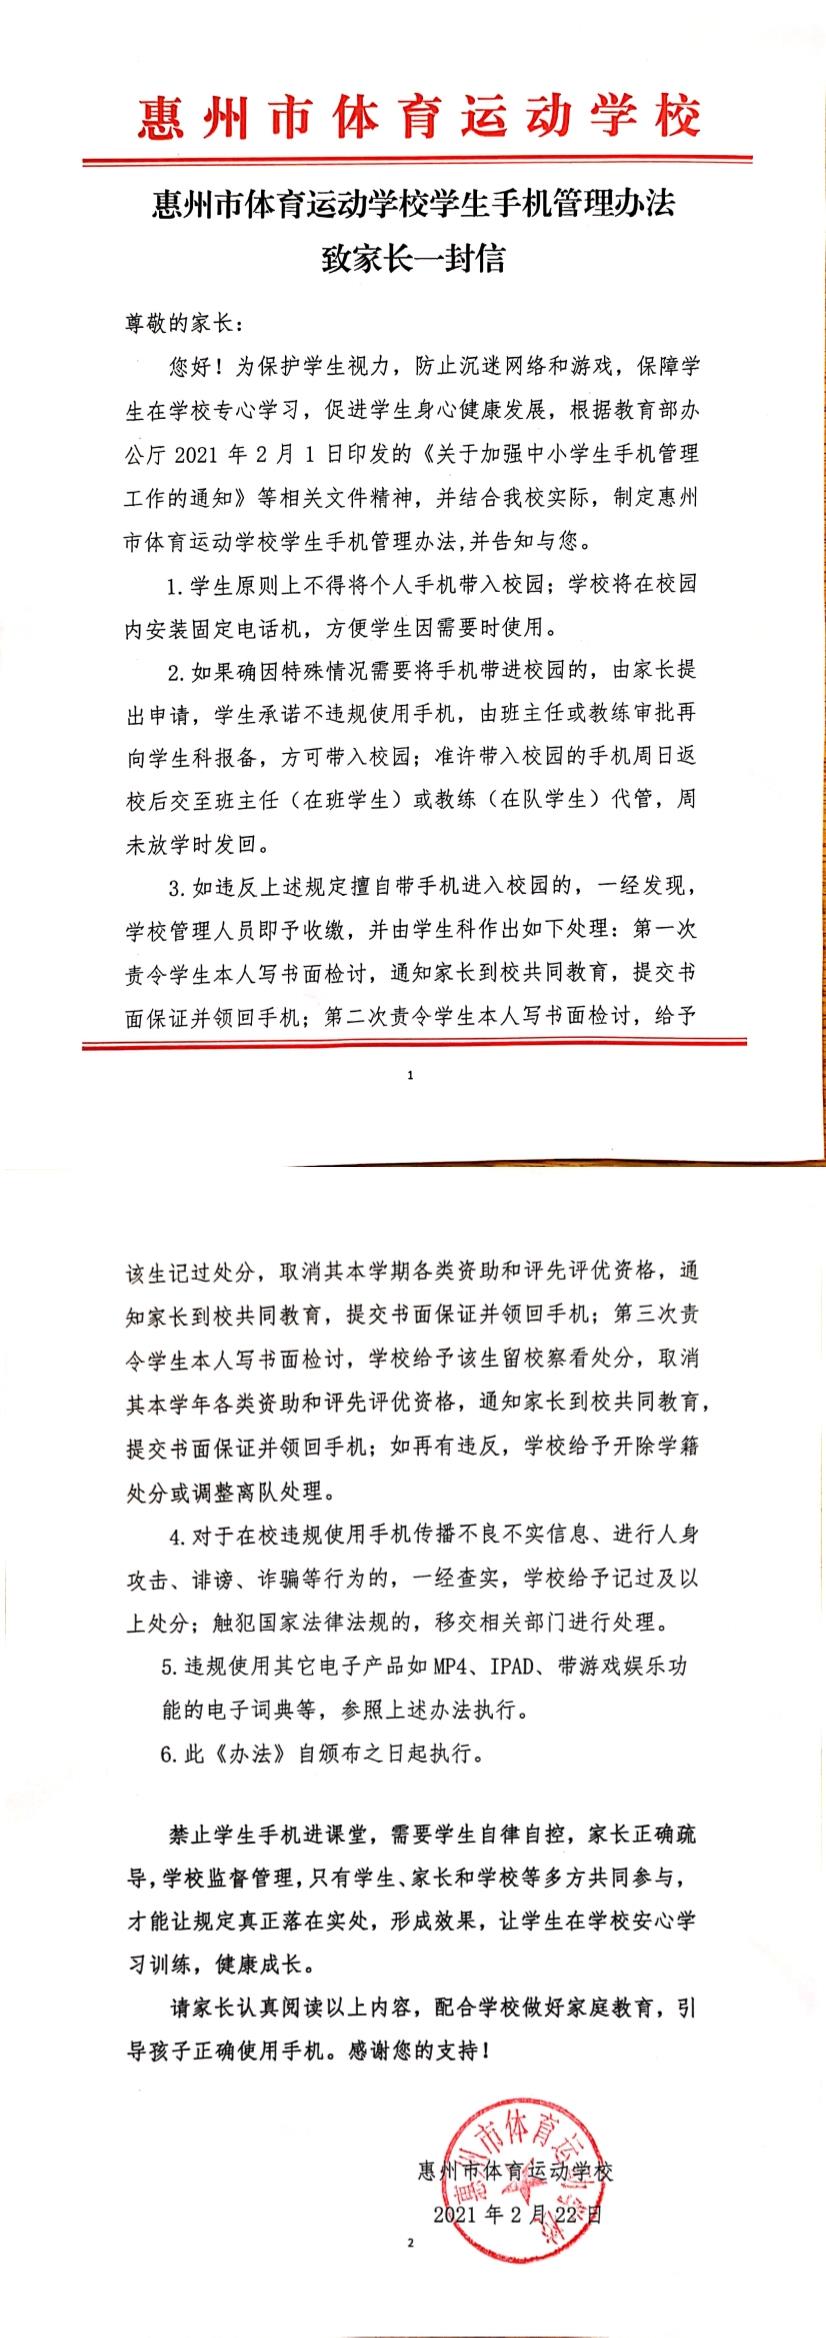 惠州市体育运动学校手机管理办法致家长一封信